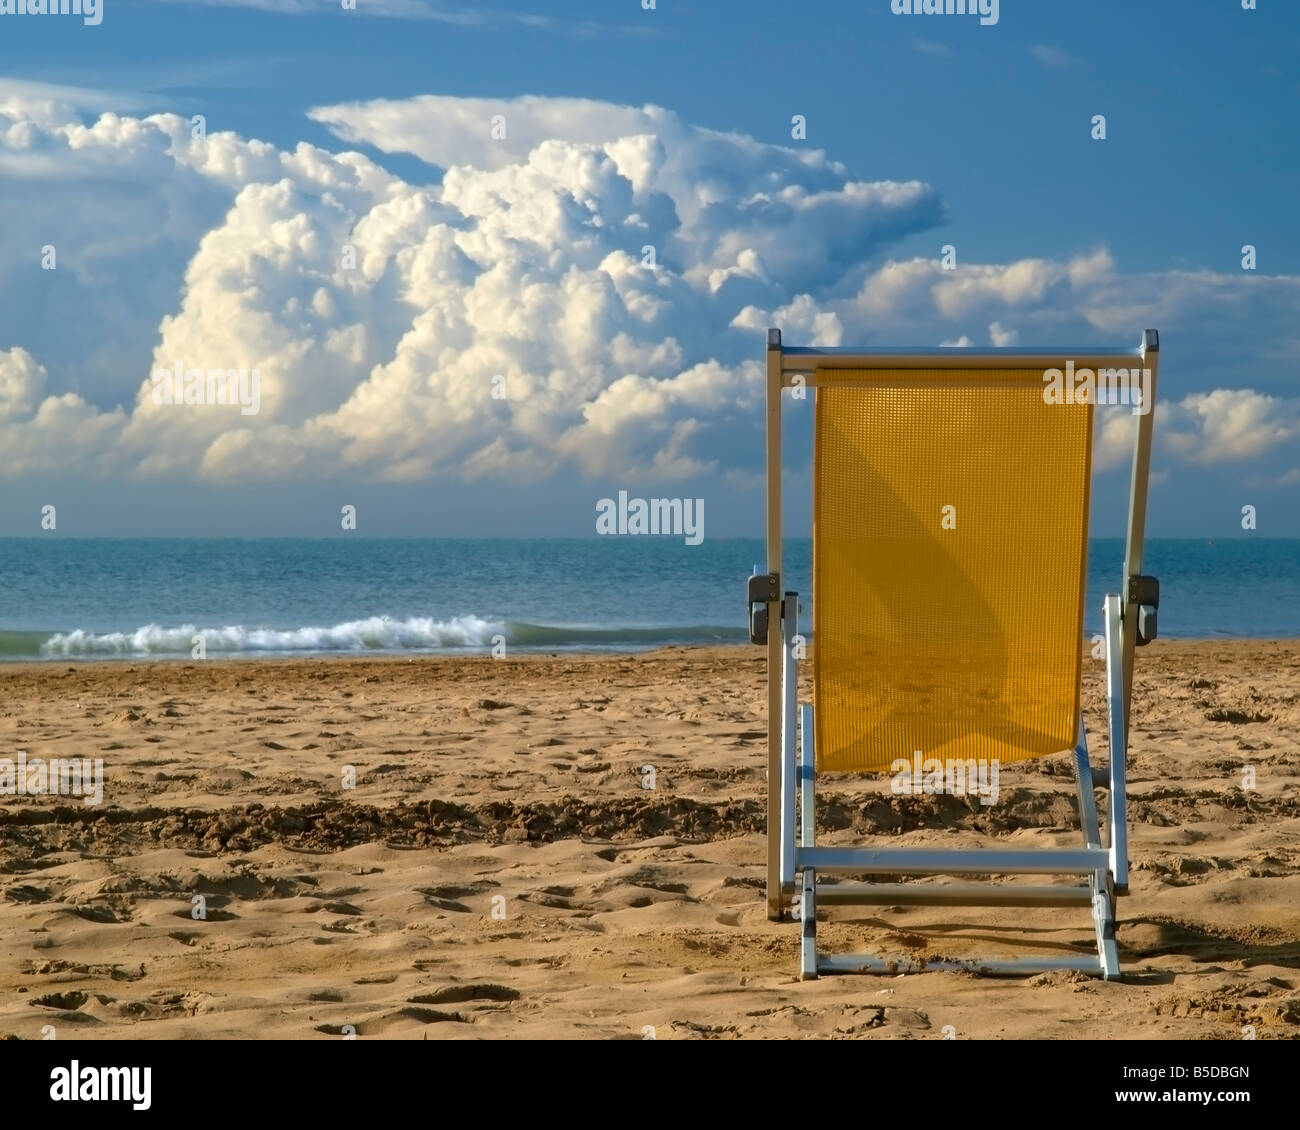 Einzigen Liegestuhl auf dem sandigen Strand, Meer mit Pferden, dramatischer  Himmel Anfang September, Bibione, nördliche Italien, Adria, Eur  Stockfotografie - Alamy